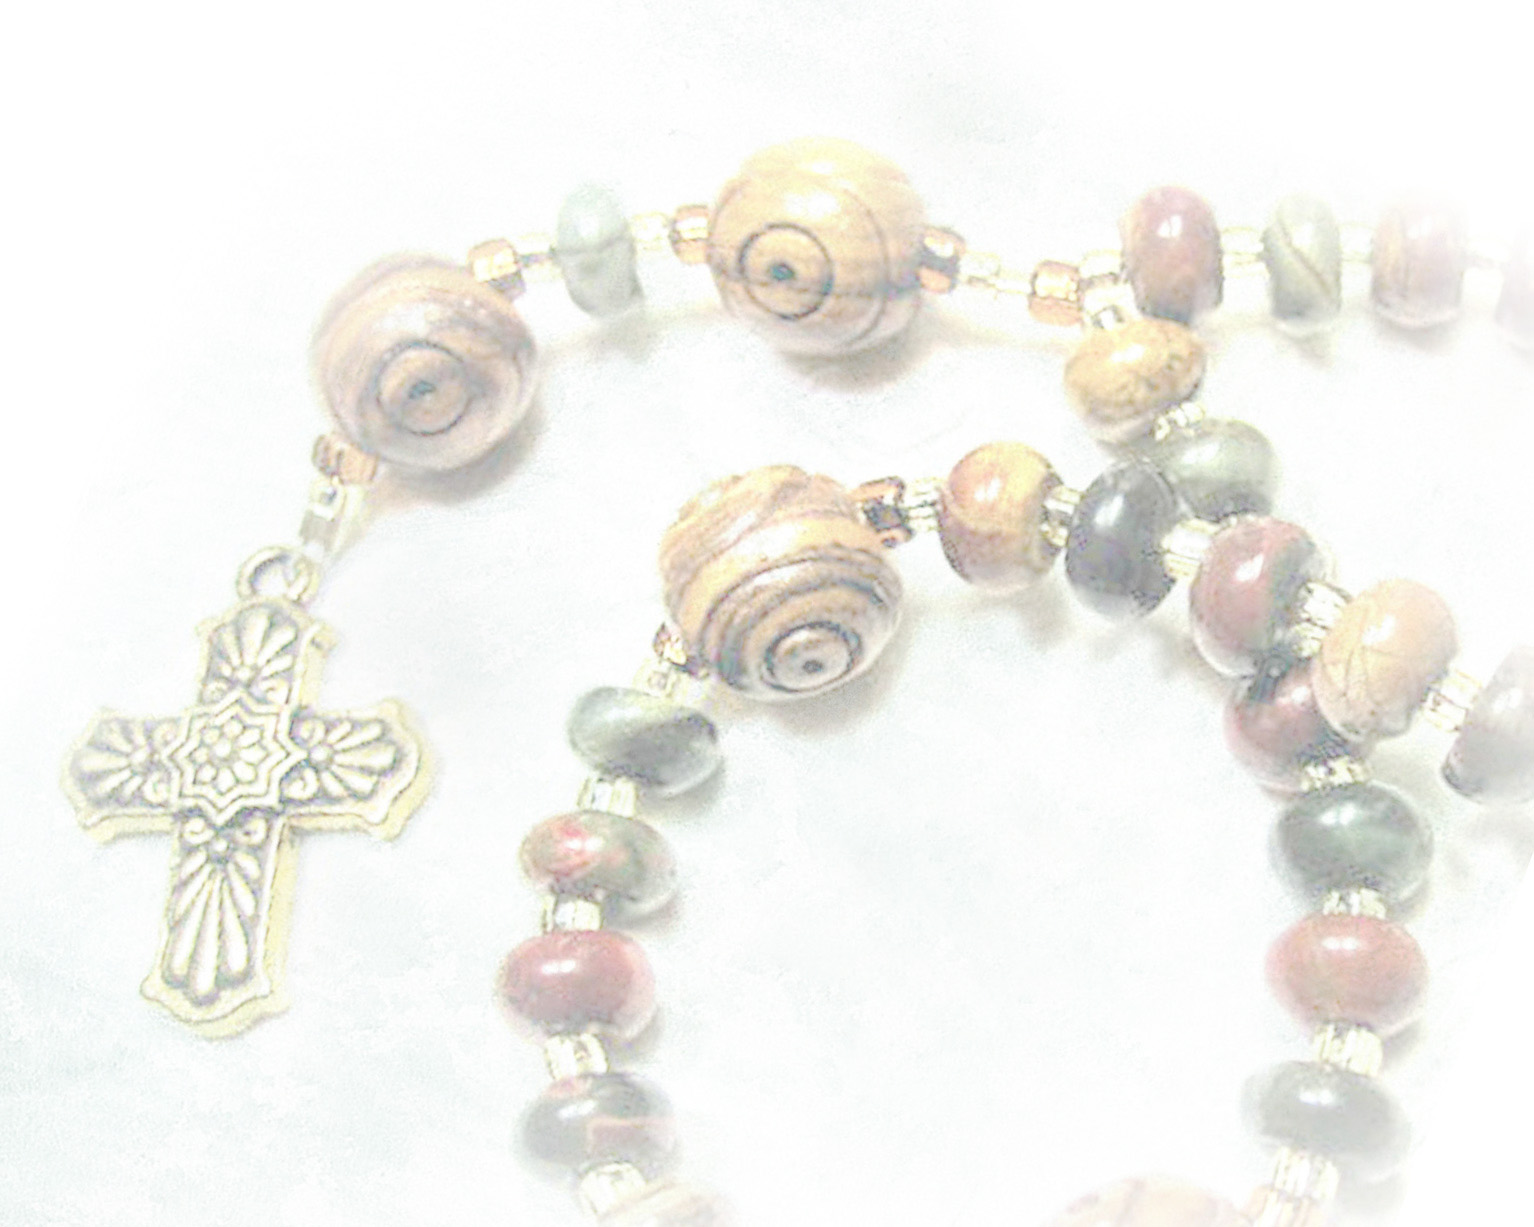 Twirled Prayer Beads